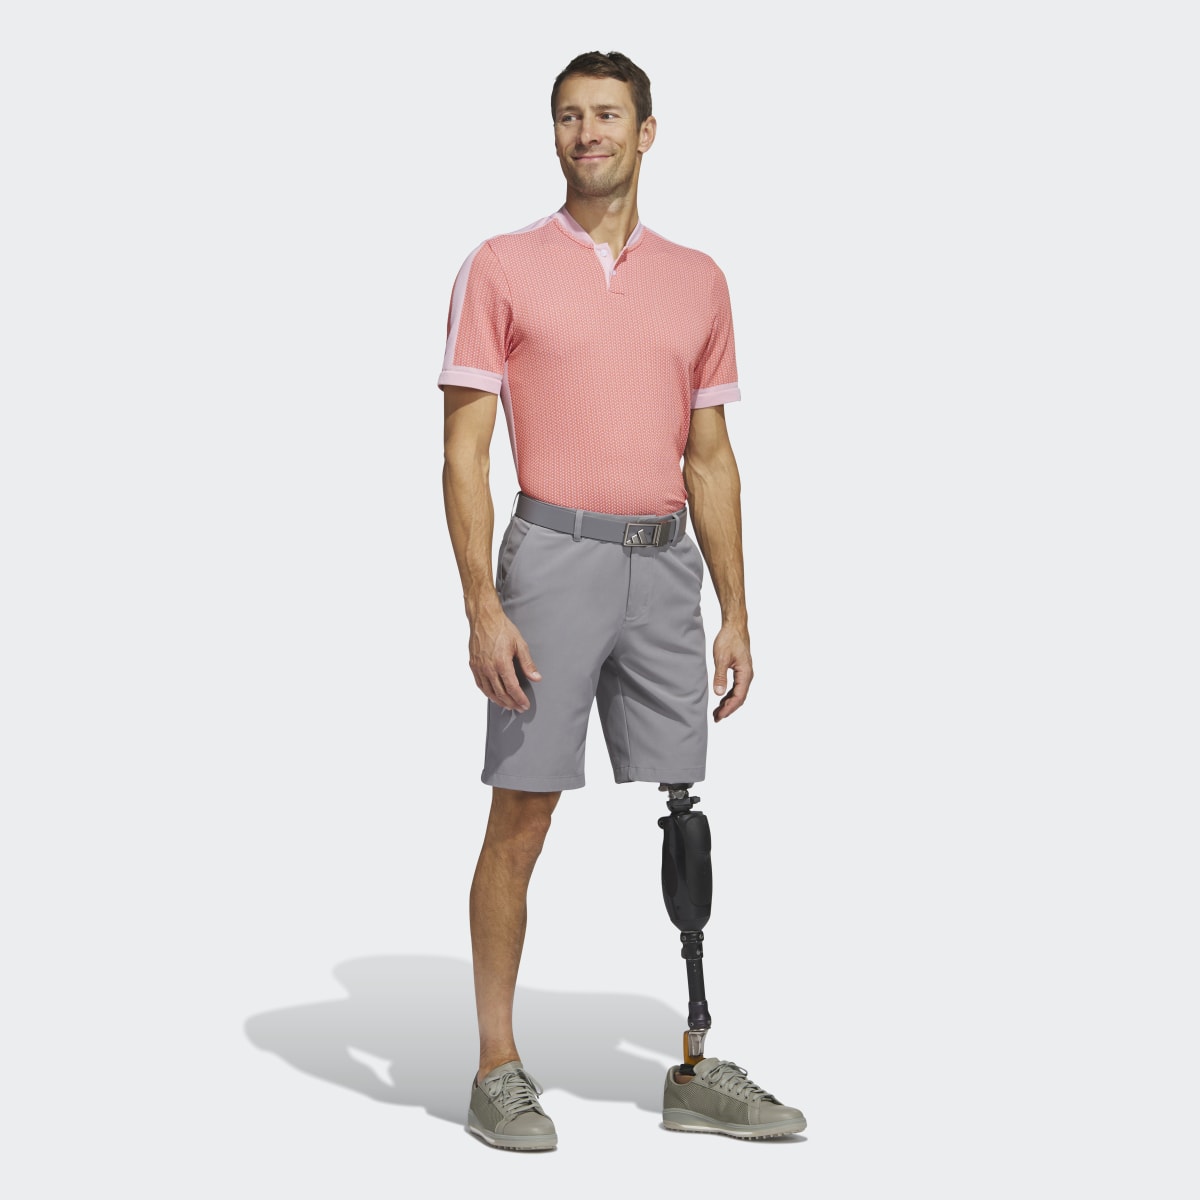 Adidas Ultimate365 Tour Textured PRIMEKNIT Golf Poloshirt. 4